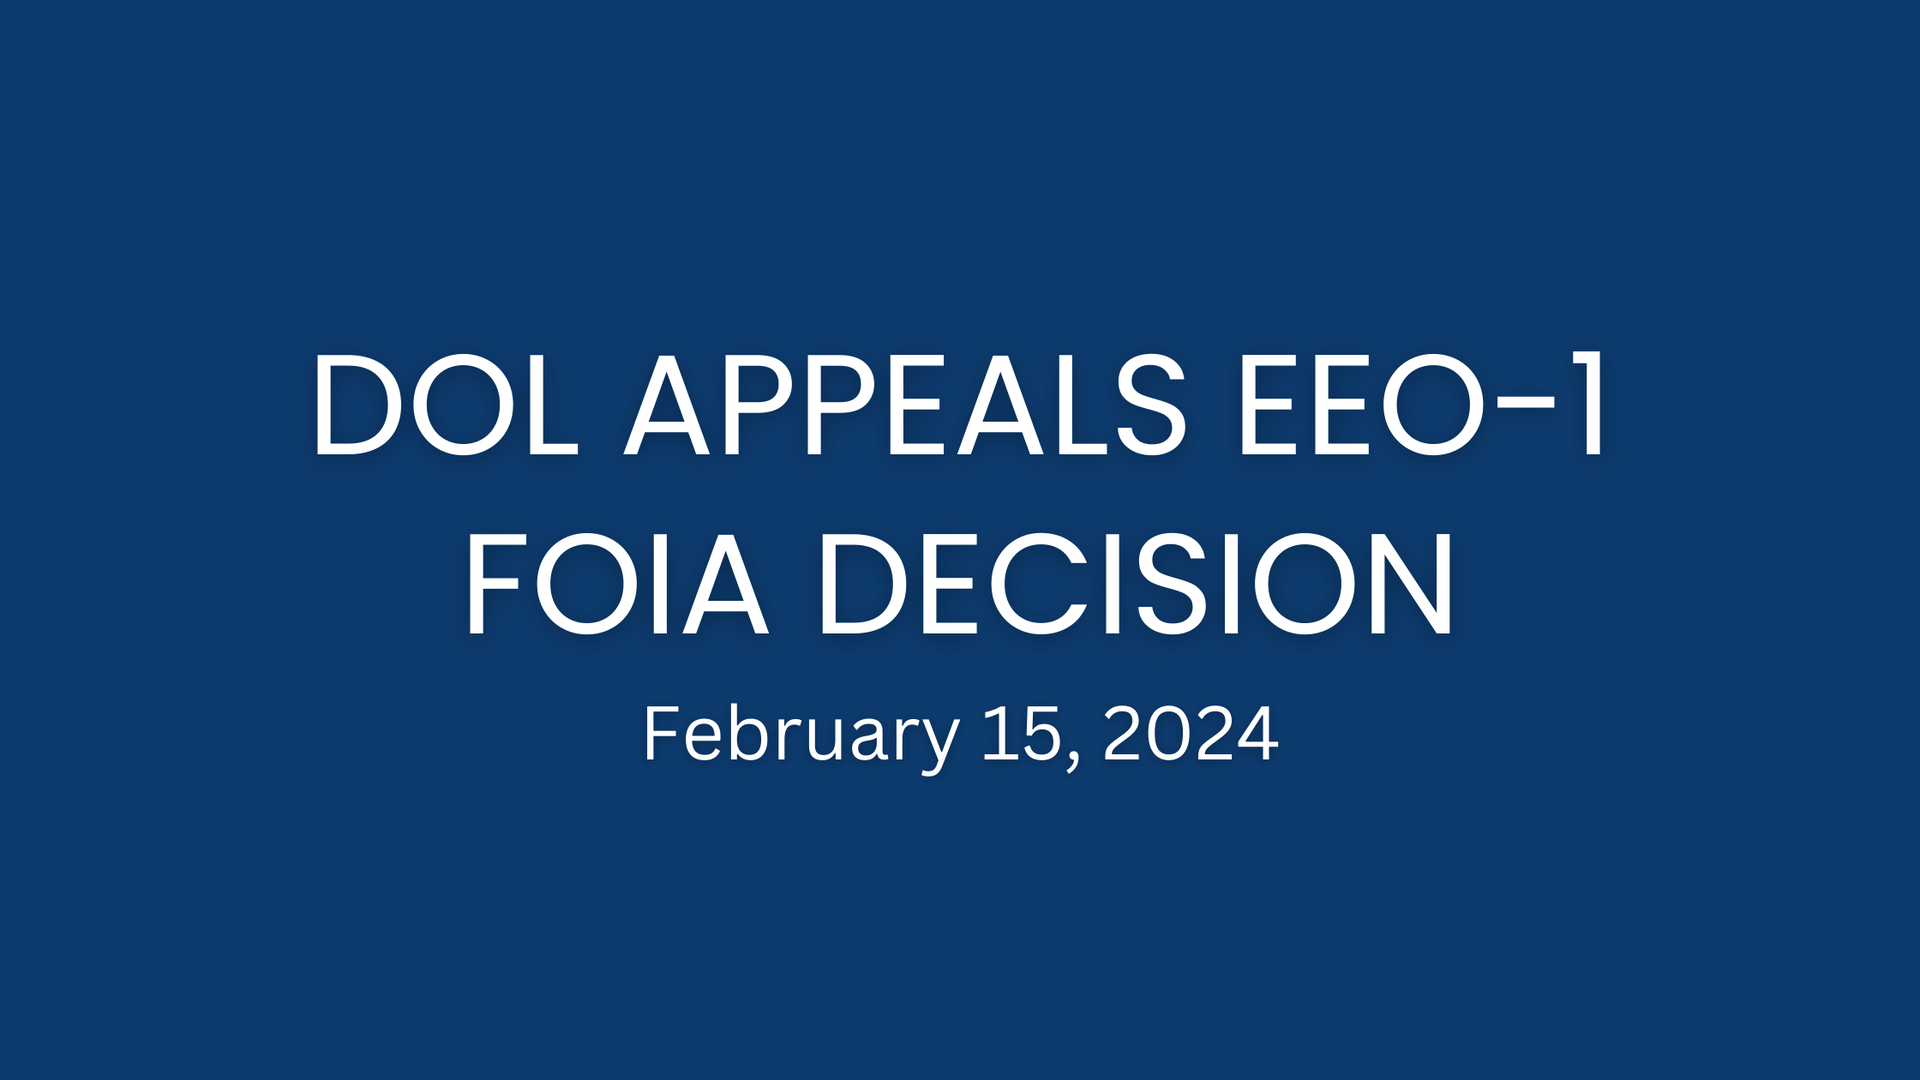 EEO-1 Report FOIA Litigation Update